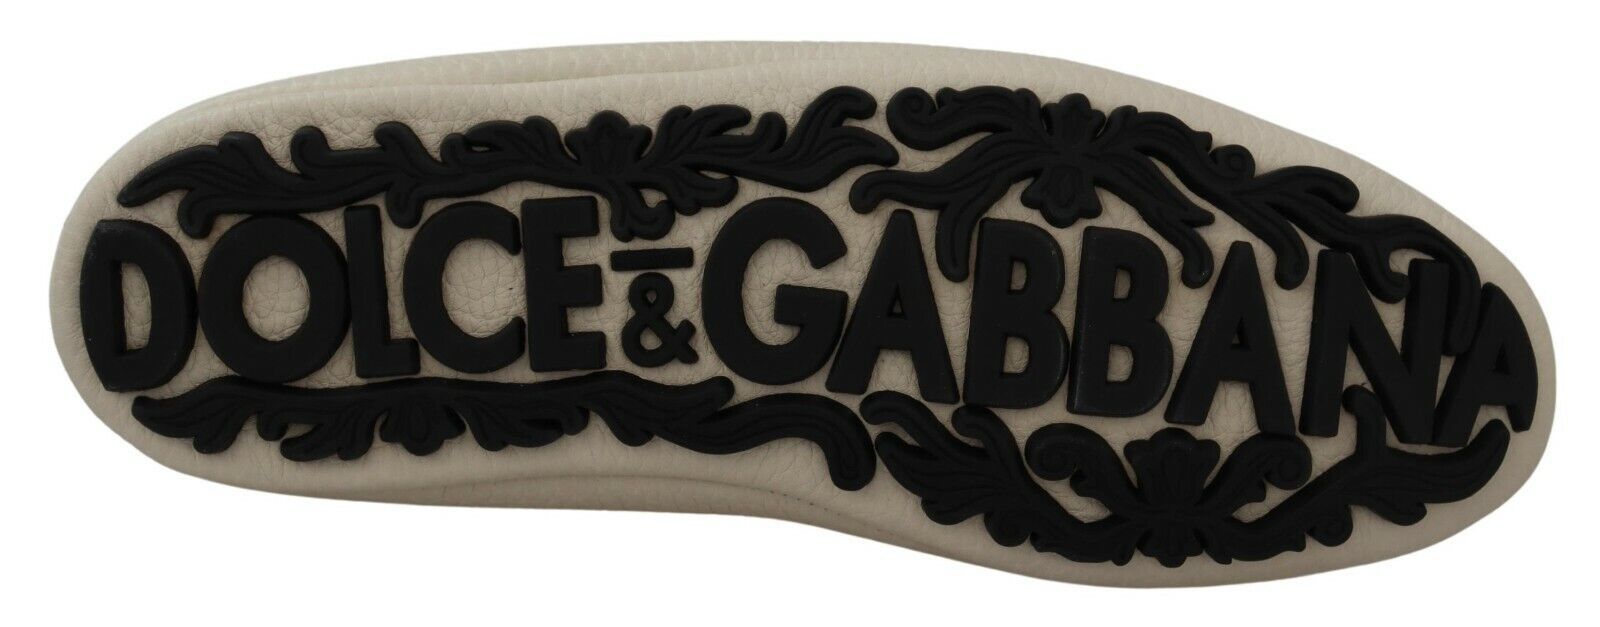 Dolce & Gabbana Elegant Beige Leather Loafers Slides Dress Shoes